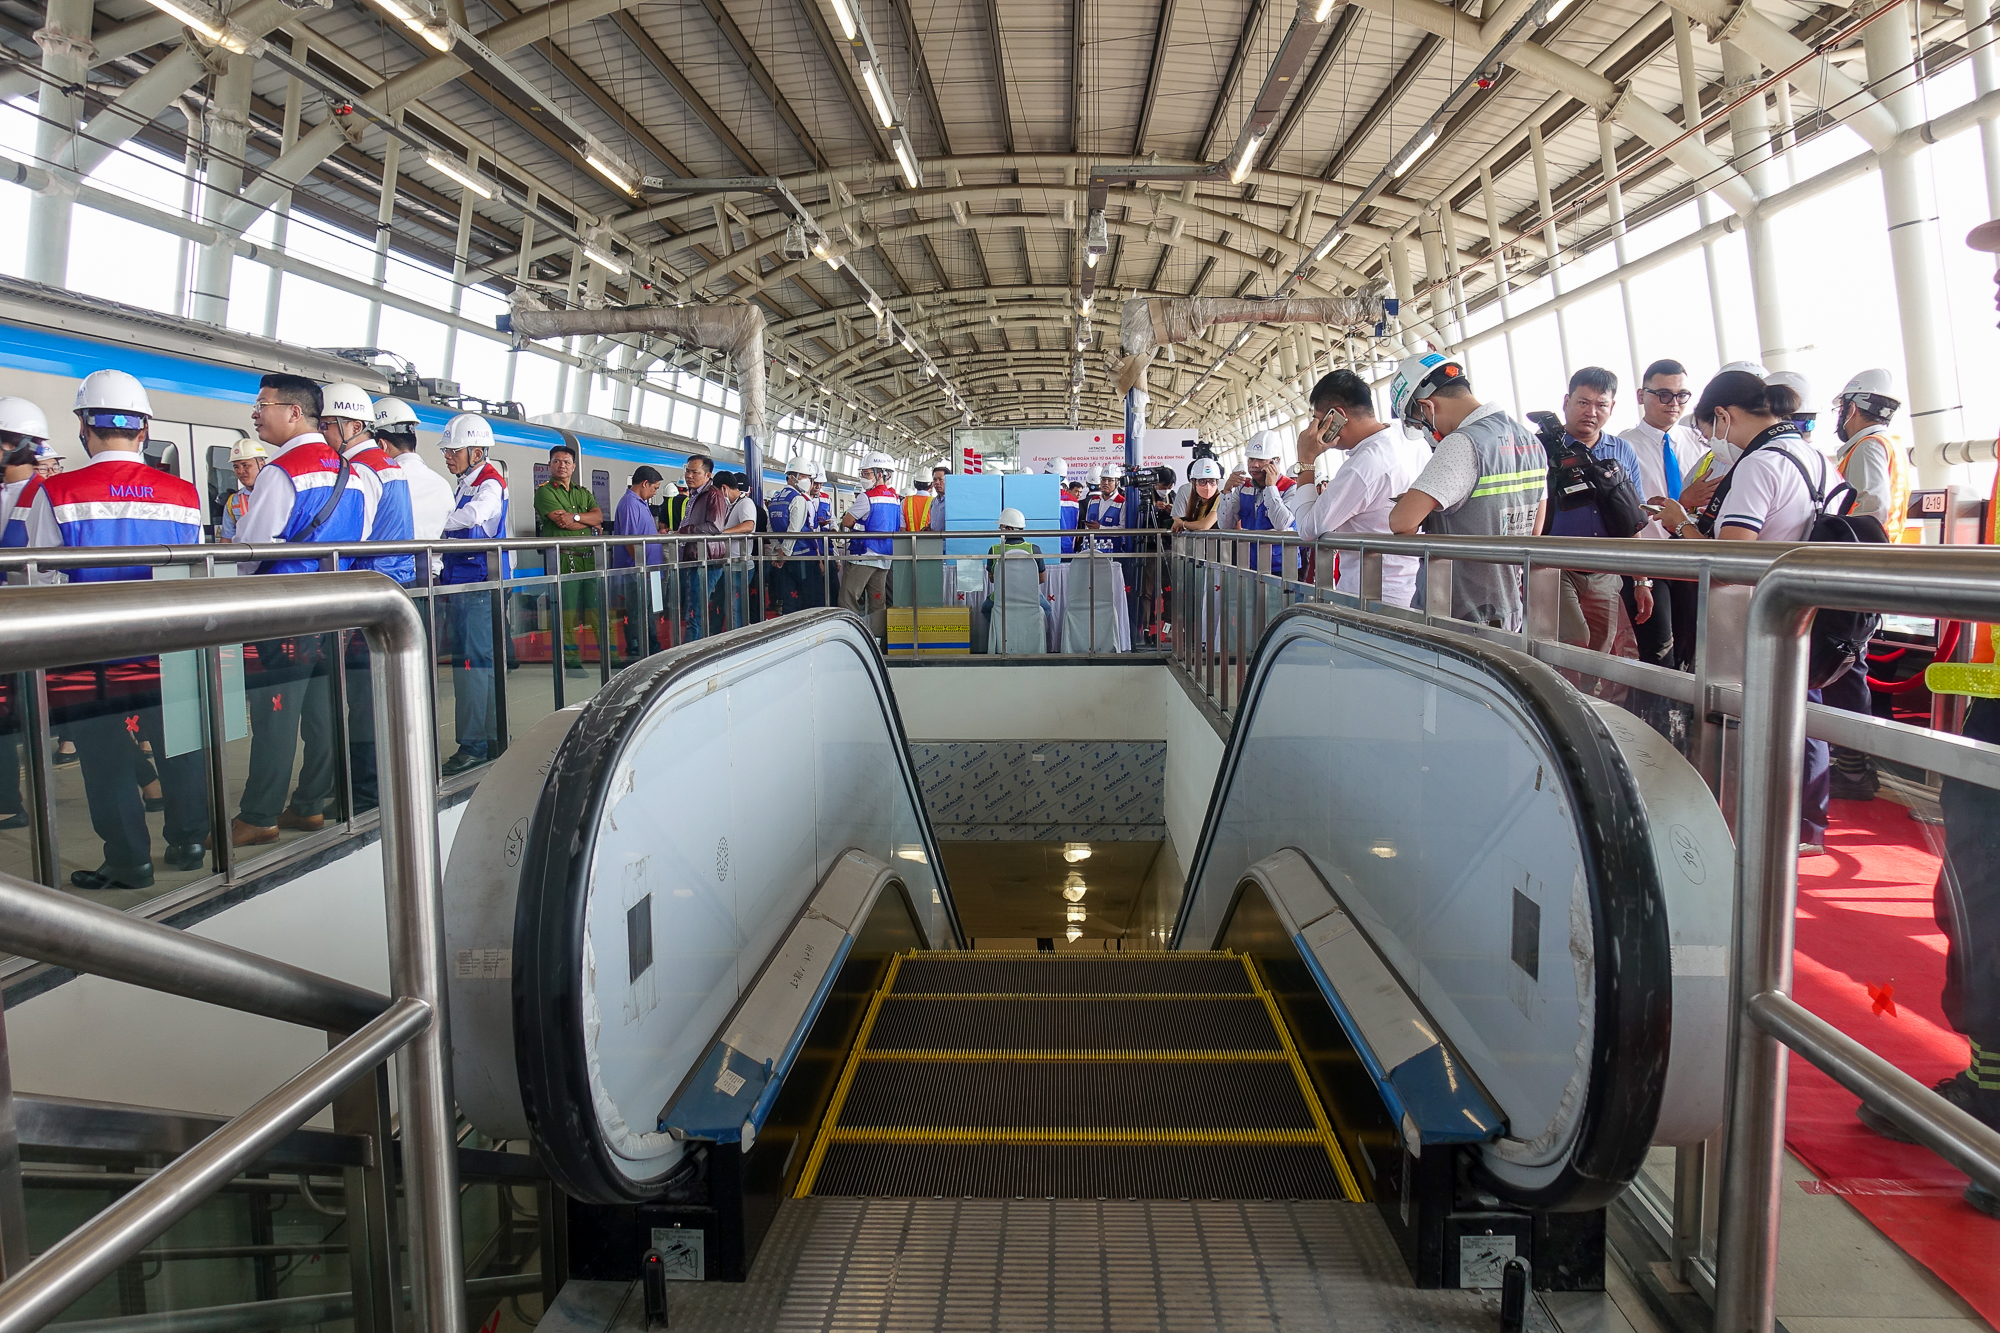 Tàu Metro số 1 TP.HCM chính chức lăn bánh chạy thử, khách thích thú lần đầu tiên được trải nghiệm  - Ảnh 2.